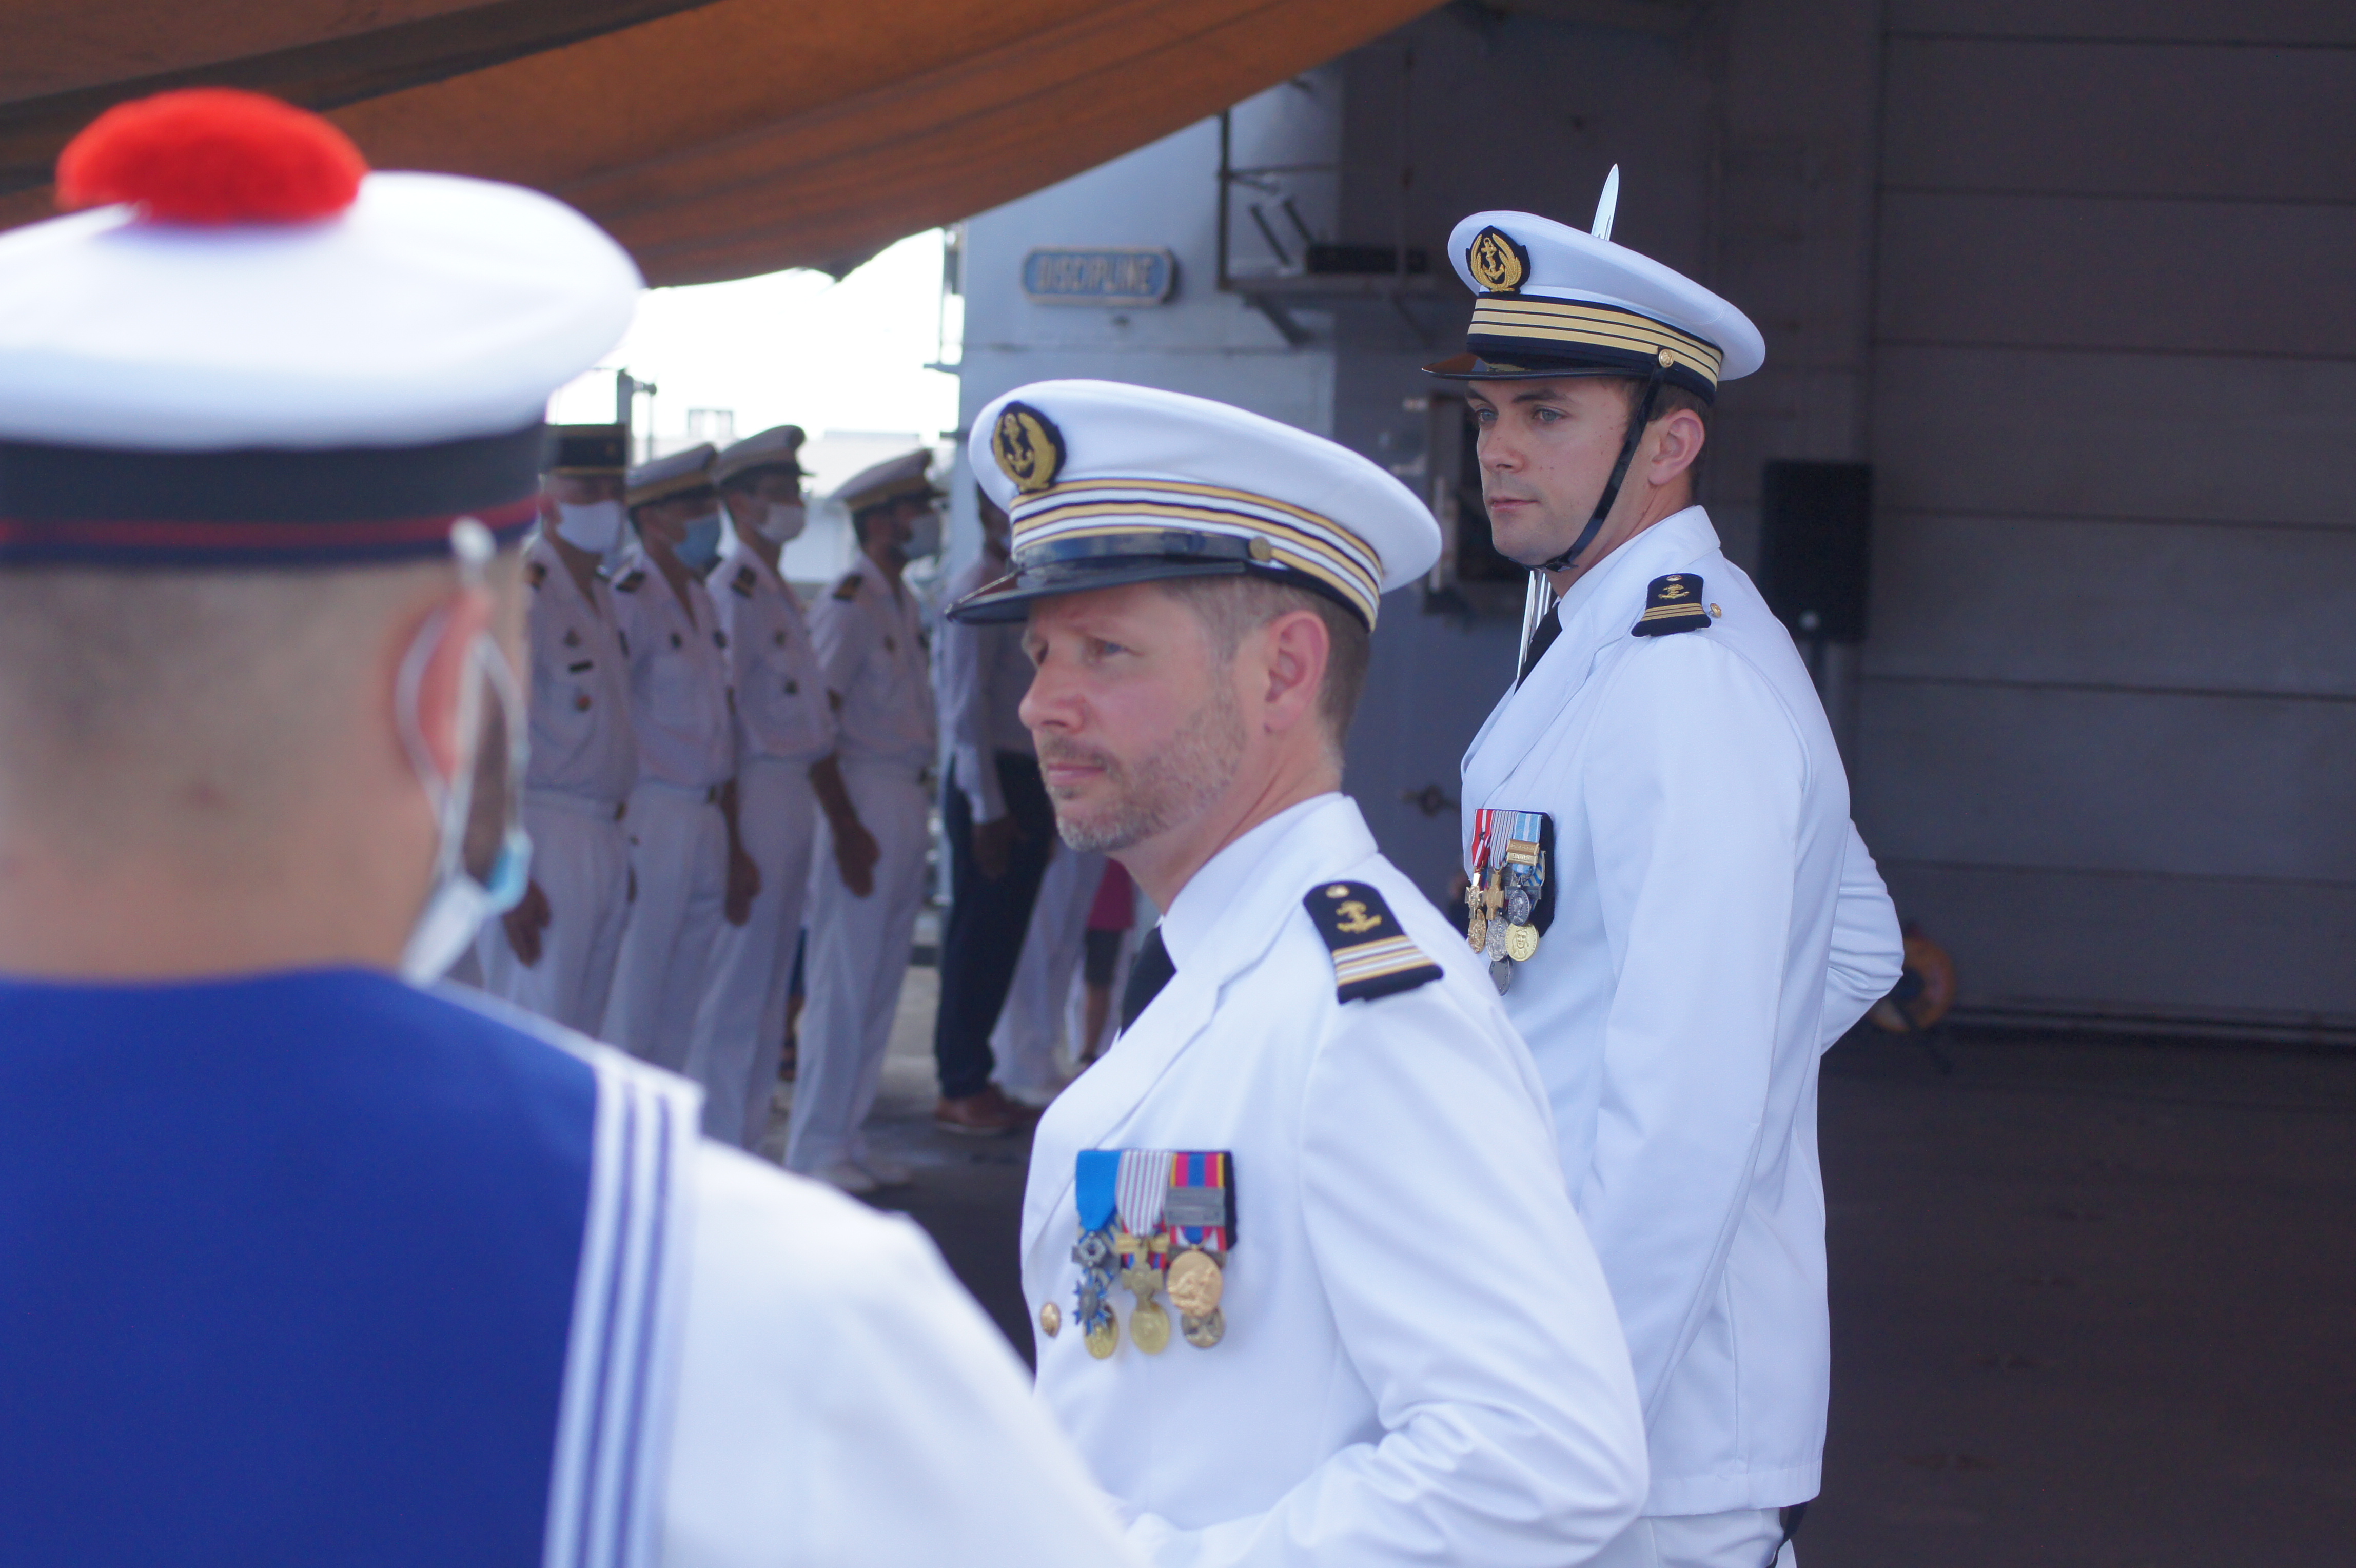 Le capitaine de Frégate Doulcet avait déjà été affecté à Tahiti, en 2002